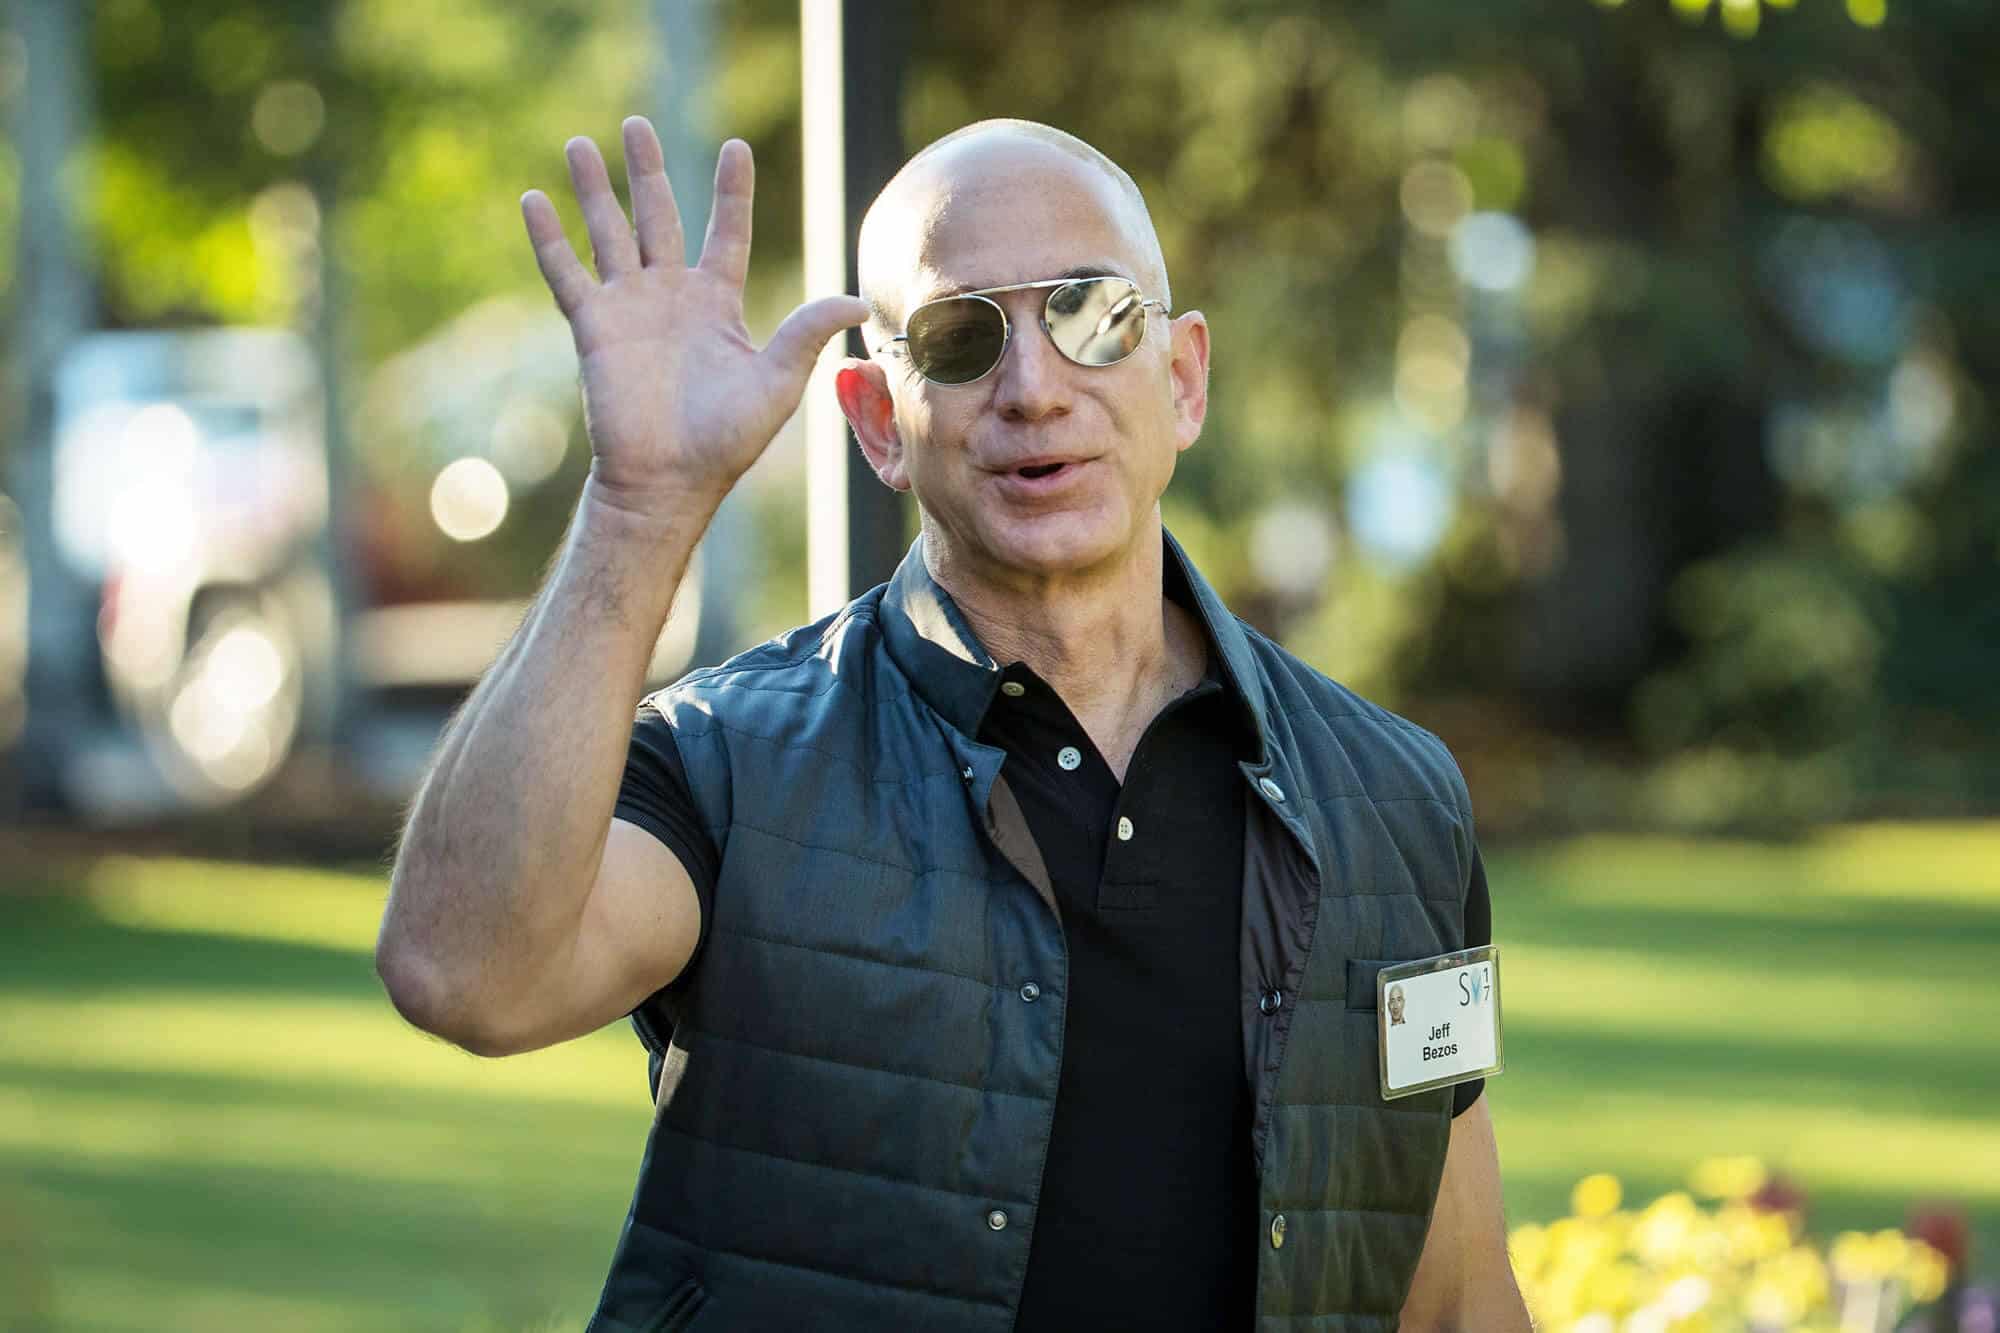 Jeff Bezos patron amazon qui salue de la main